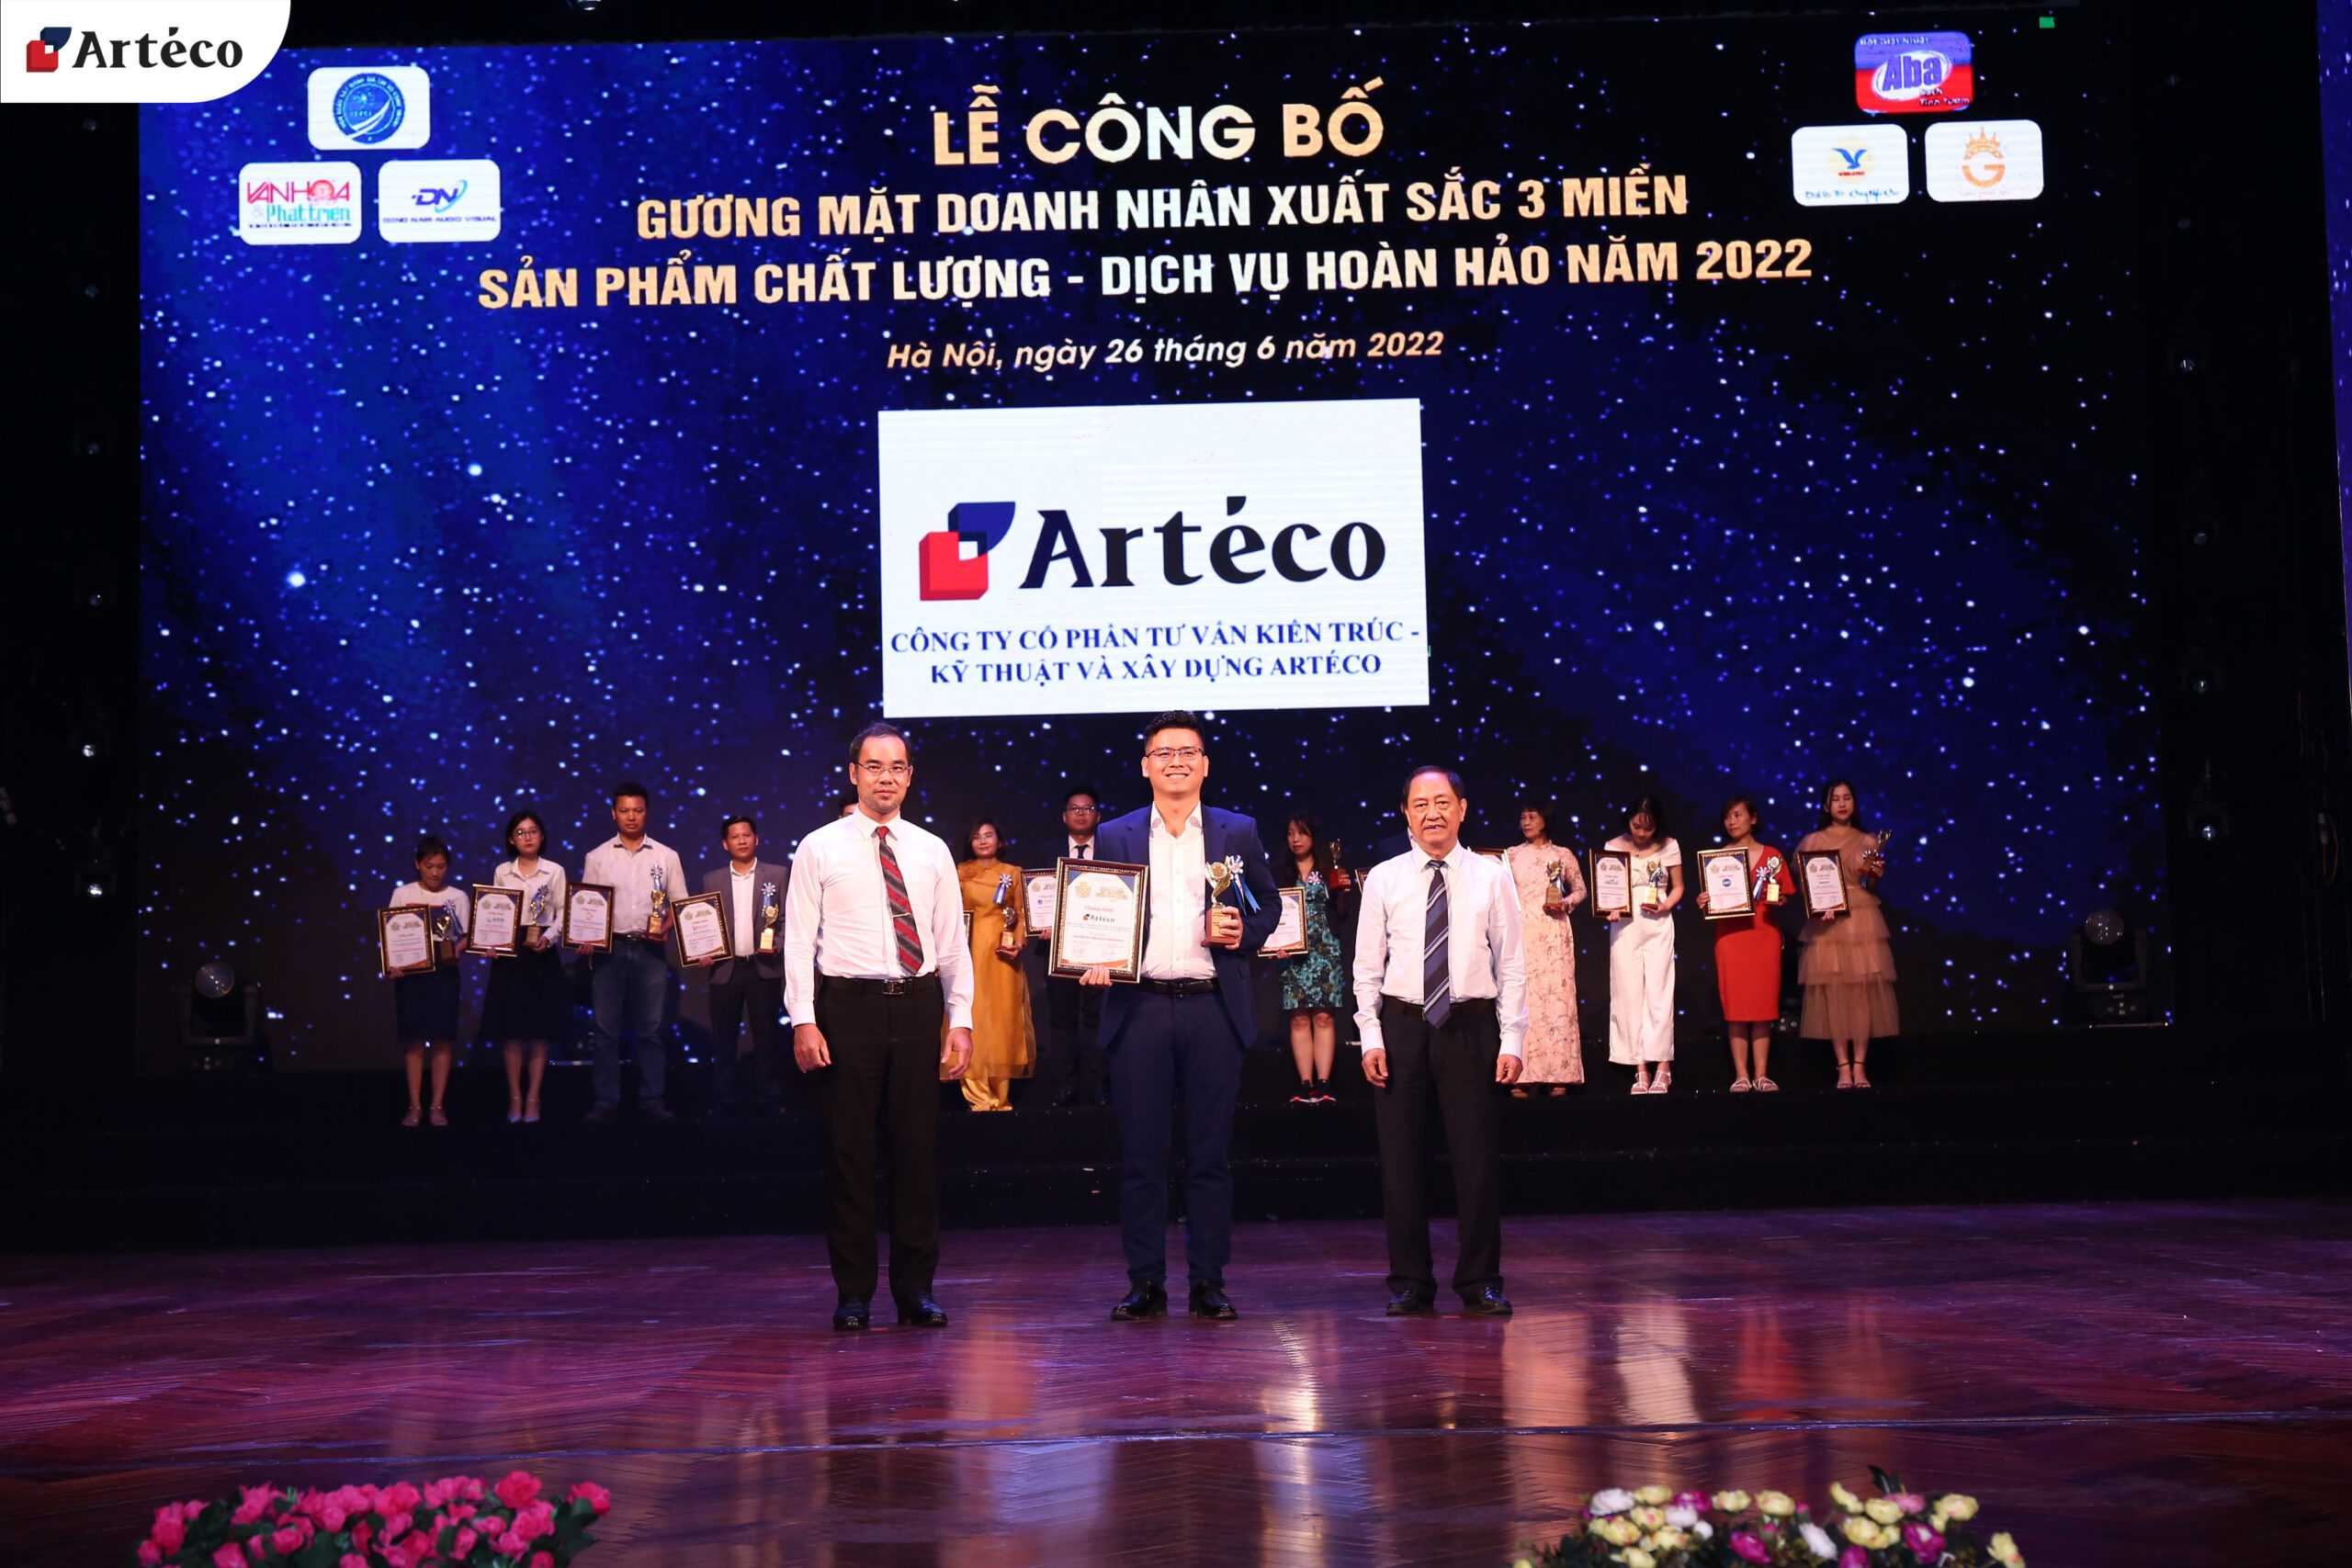 Arteco - Nhận giải thưởng “SẢN PHẨM CHẤT LƯỢNG, DỊCH VỤ HOÀN HẢO 2022”